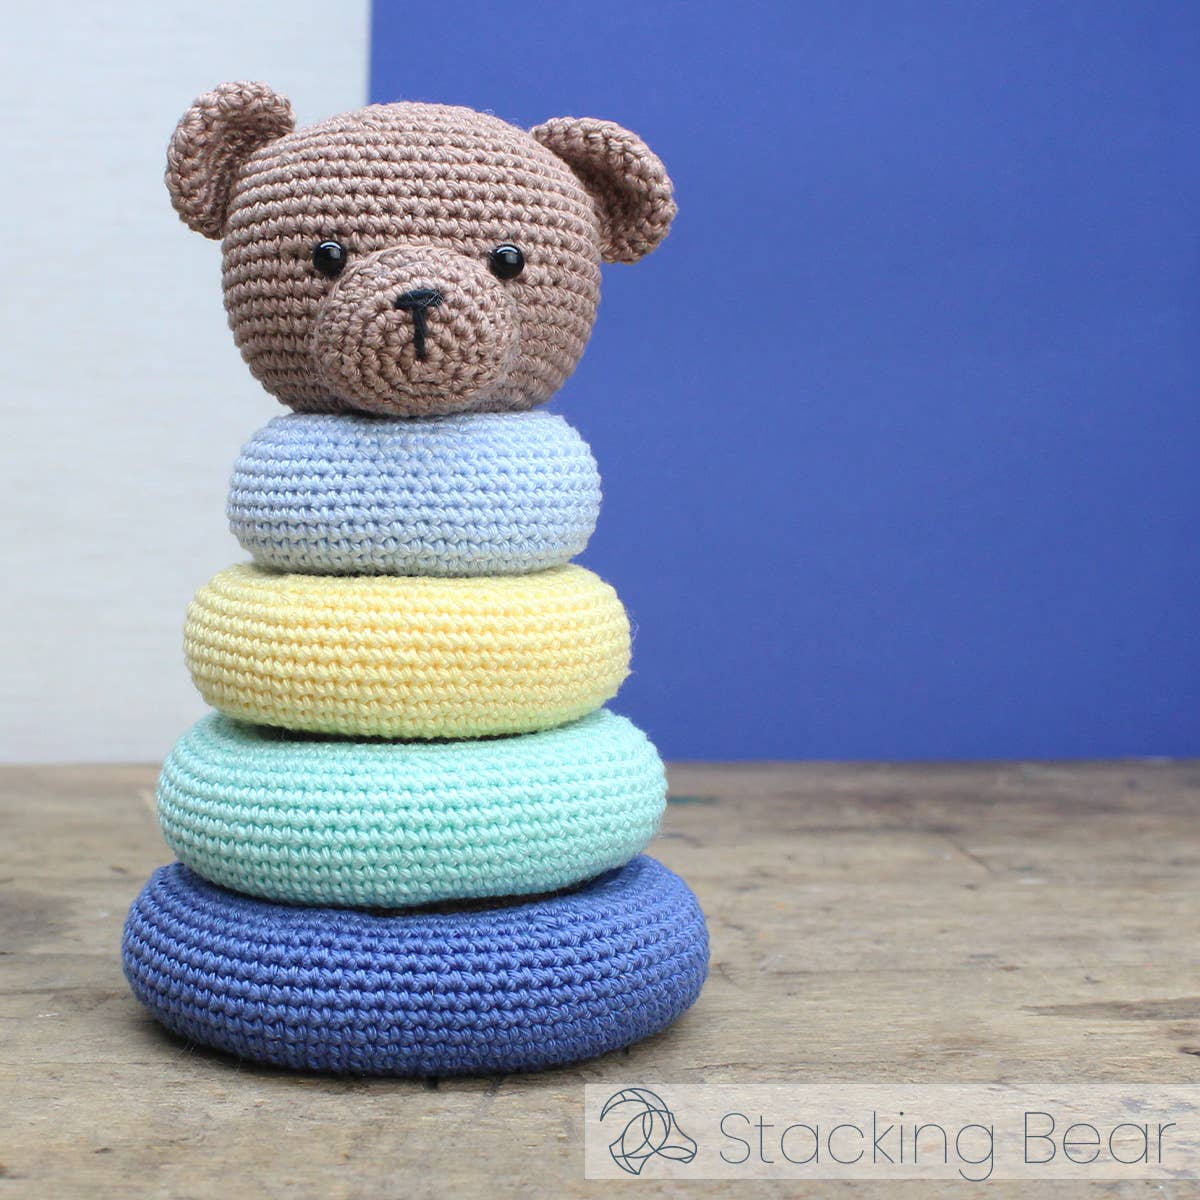 Hardicraft - Stacking Bear - Crochet Kit